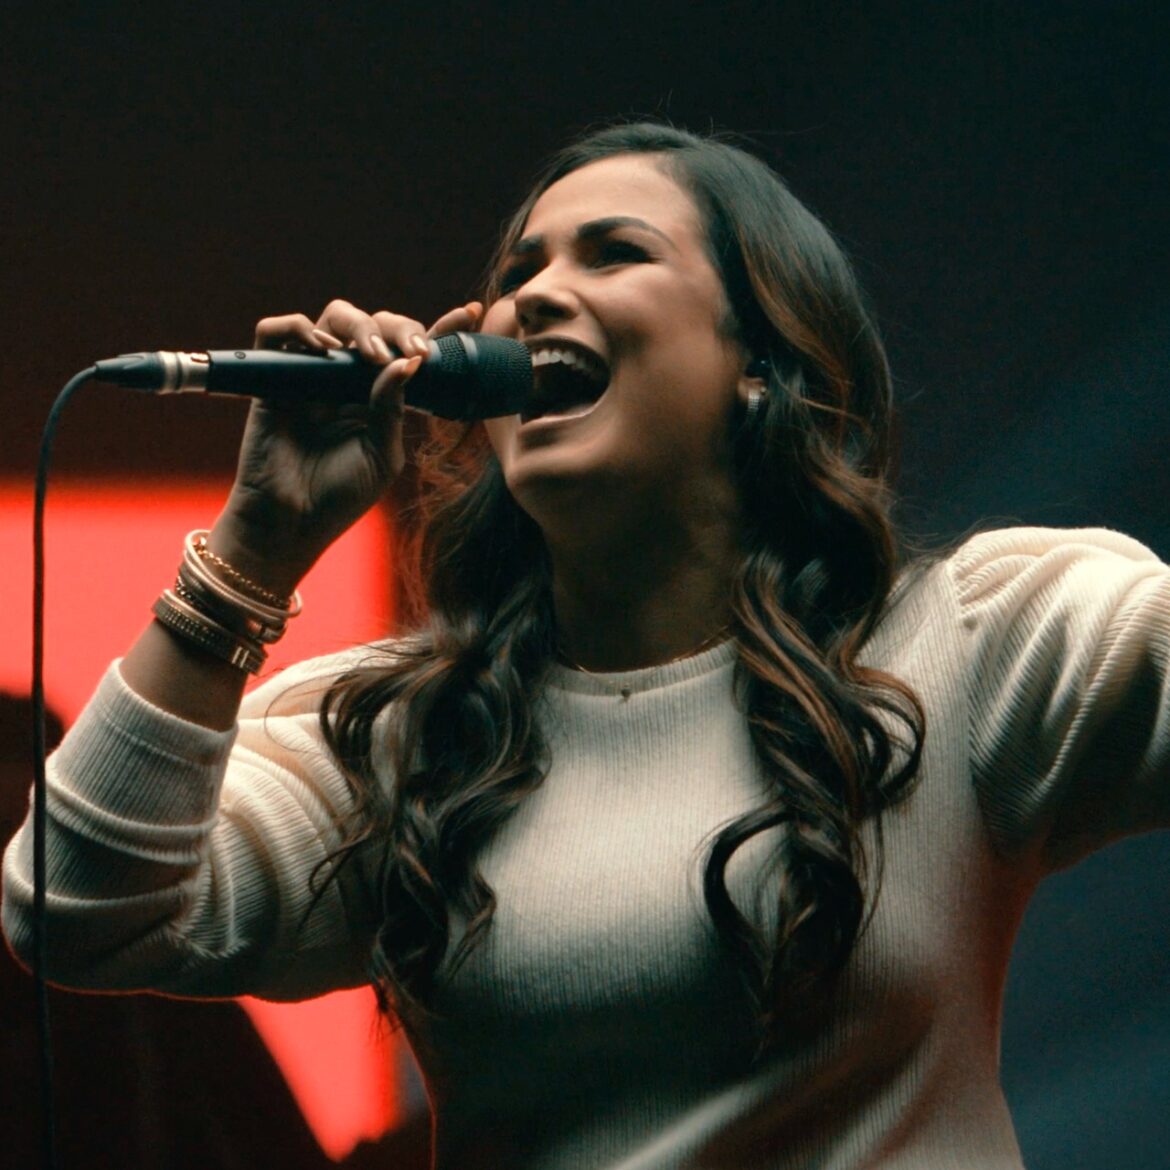 Bruna Olly fala sobre o mover do Espírito Santo em seu novo single